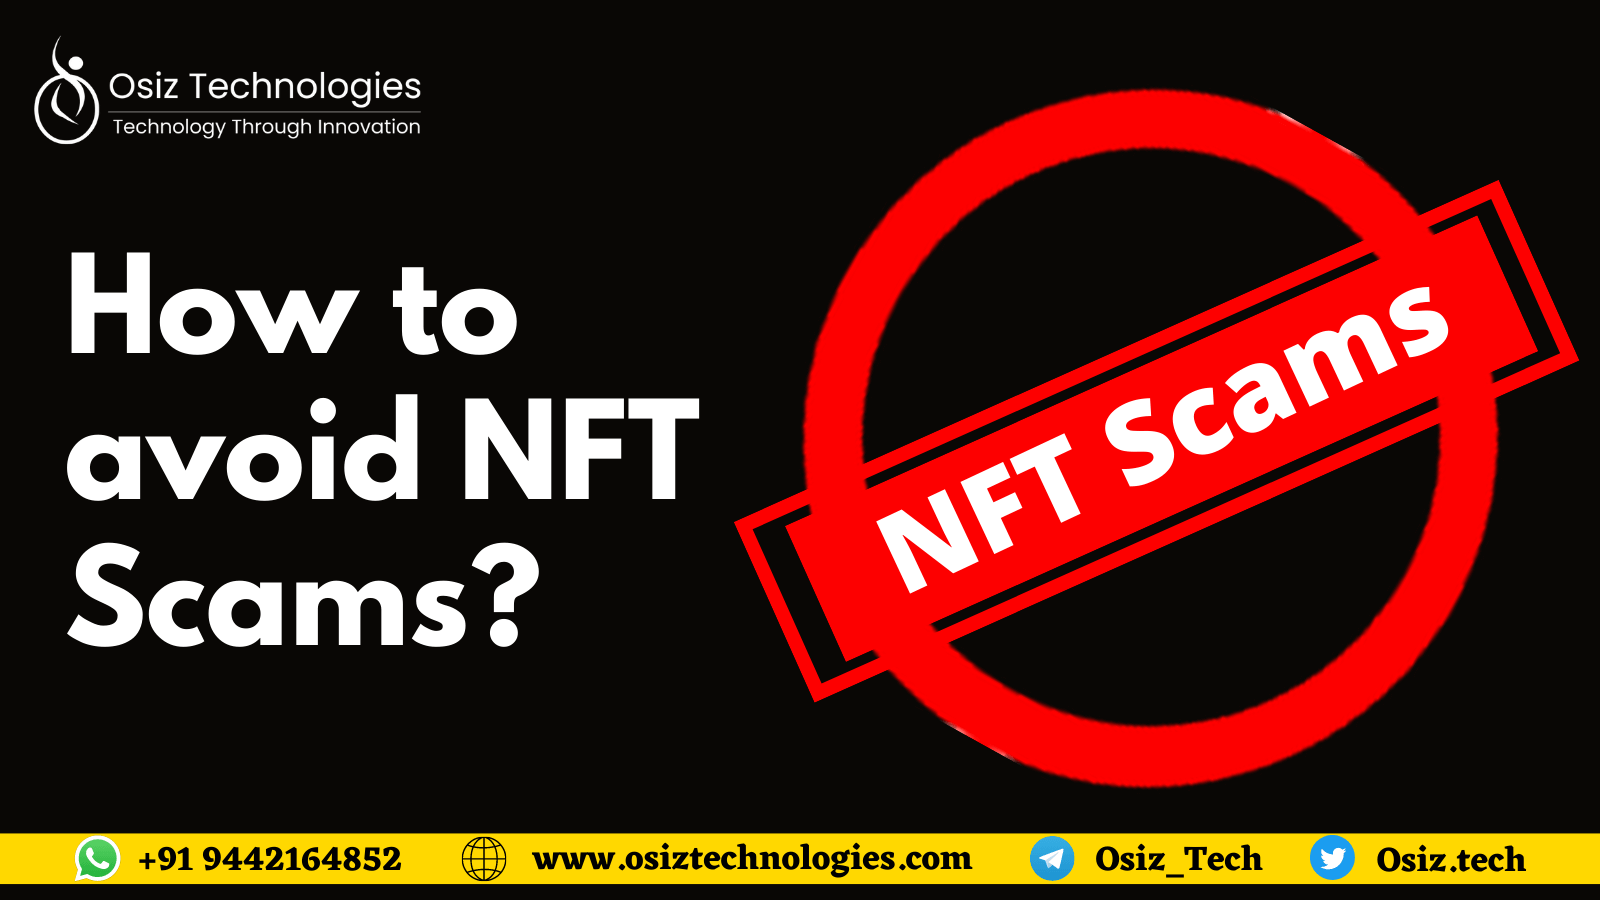 Avoid NFT Scams